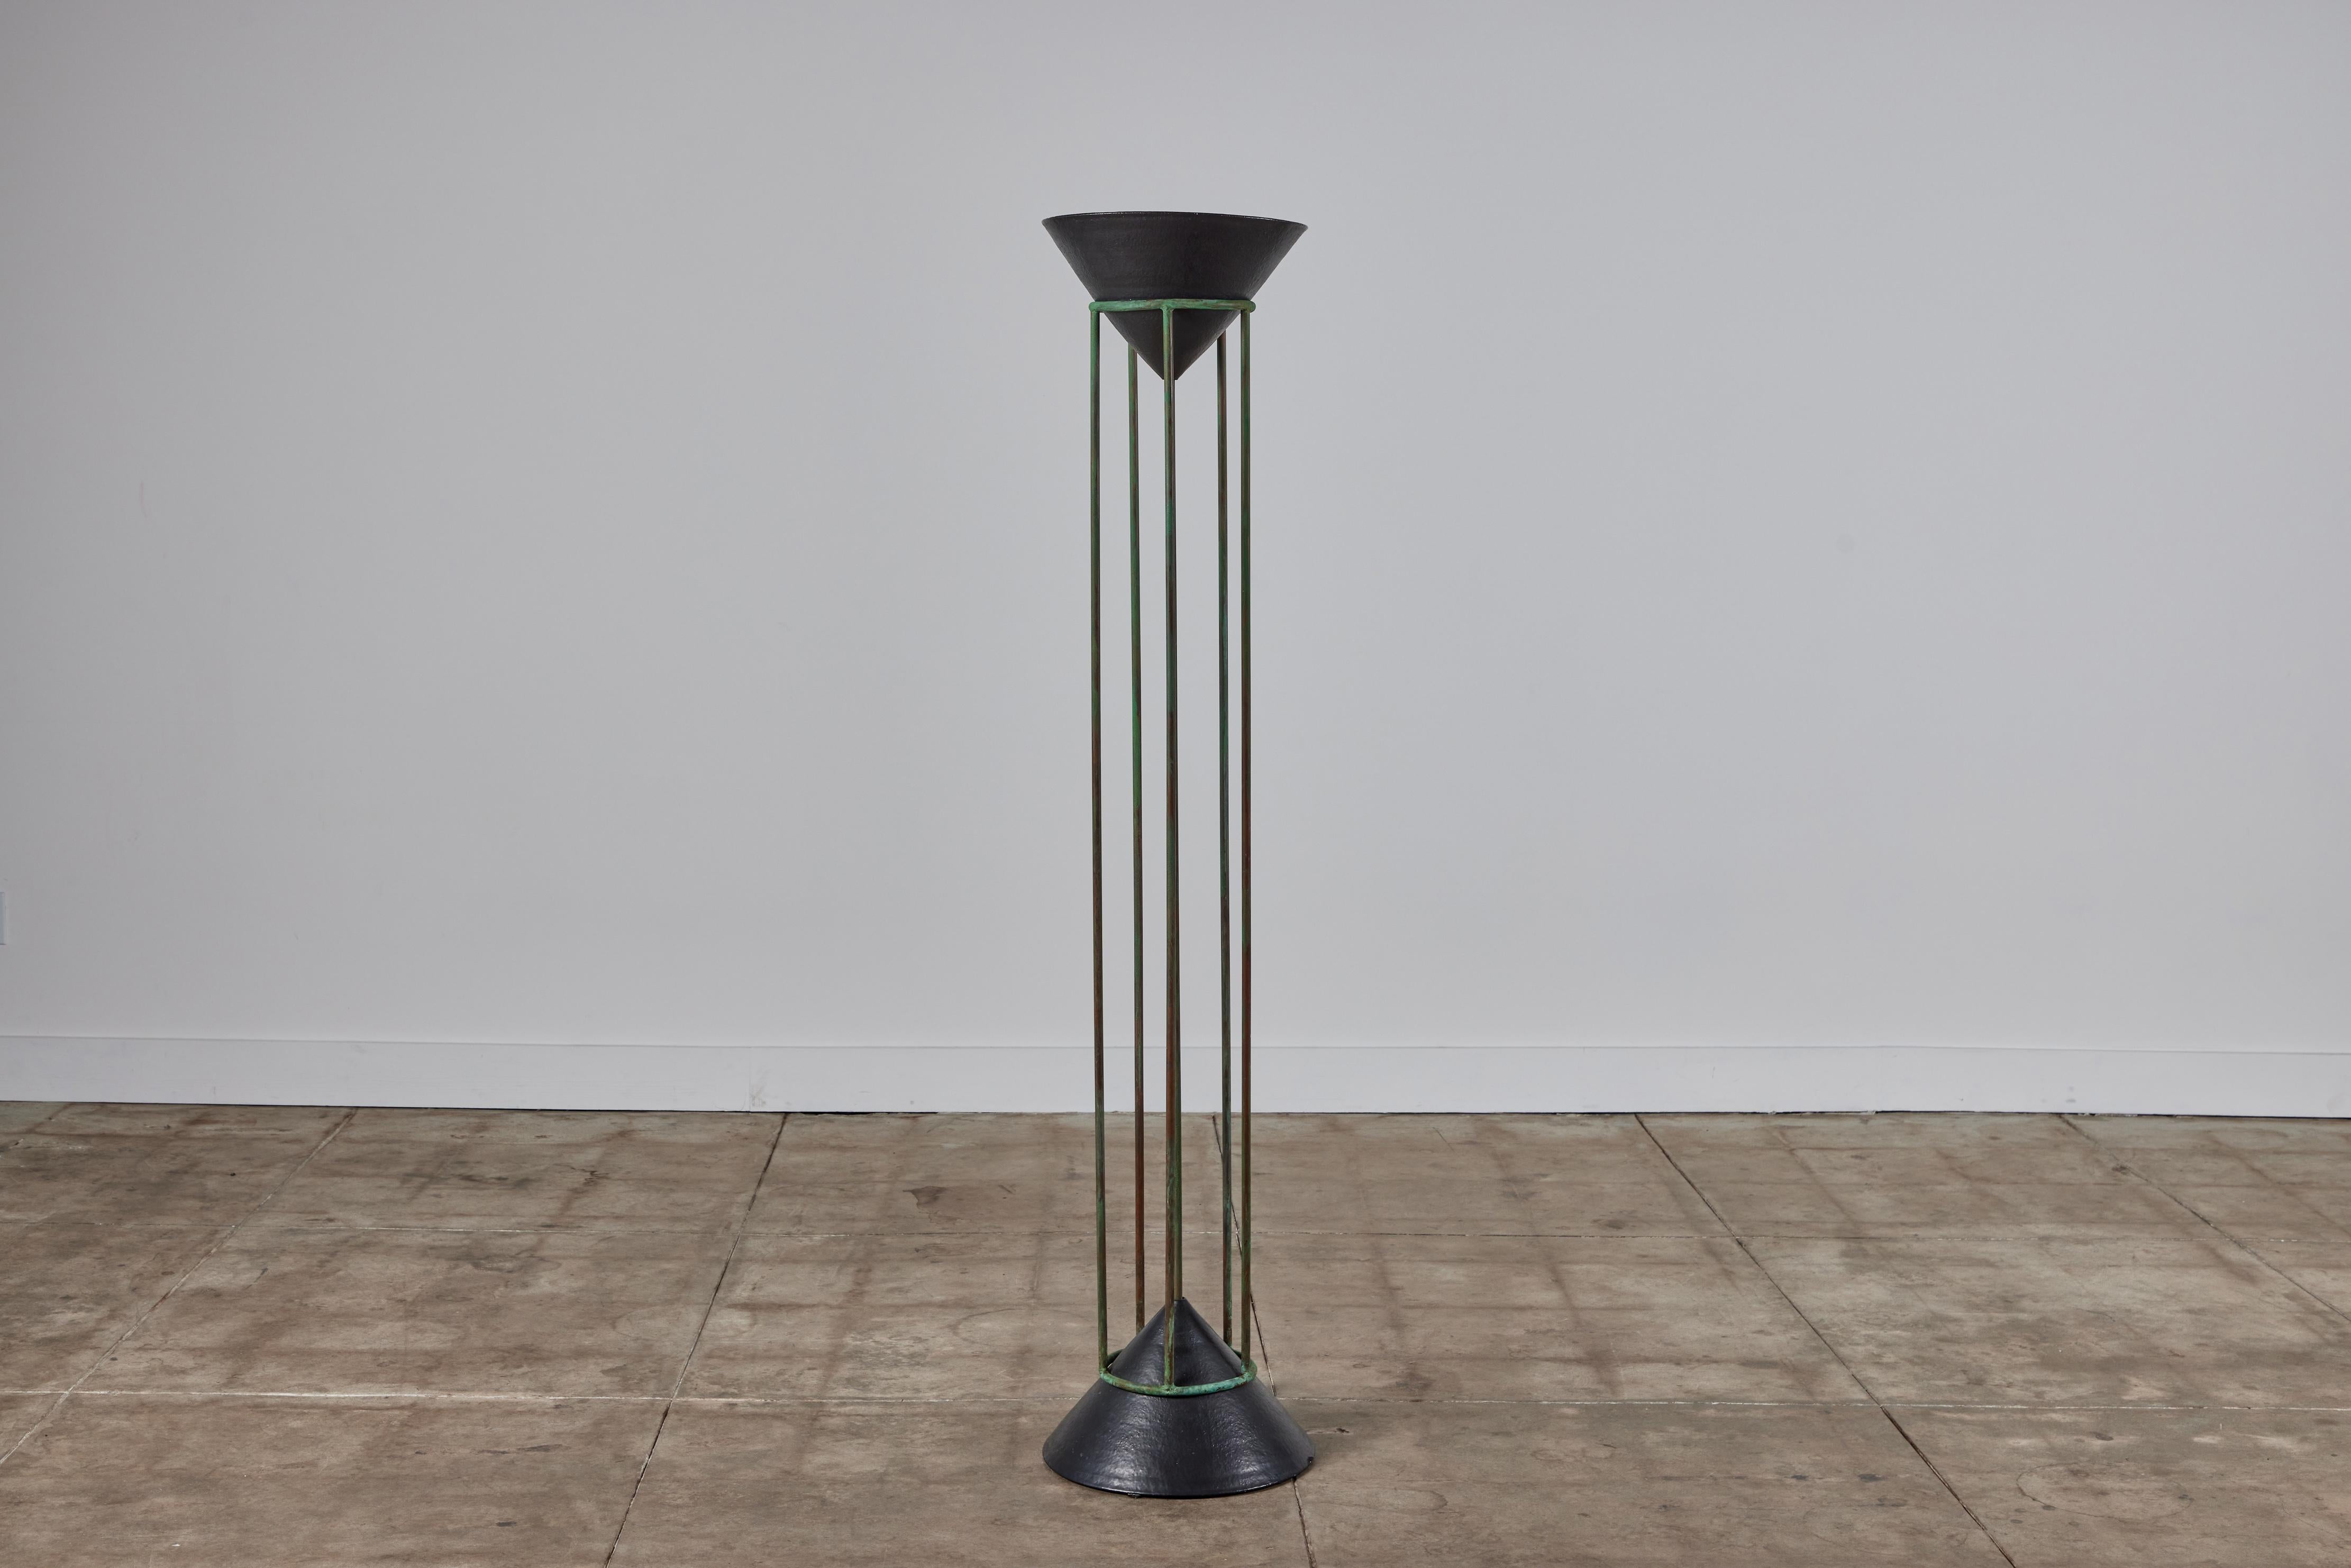 Lampadaire postmoderne en cuivre et céramique, c.1987, USA. Cette lampe présente une base conique en céramique émaillée noire ainsi qu'un abat-jour en céramique avec éclairage vers le haut. Le cadre de la lampe est un tube de cuivre patiné imitant